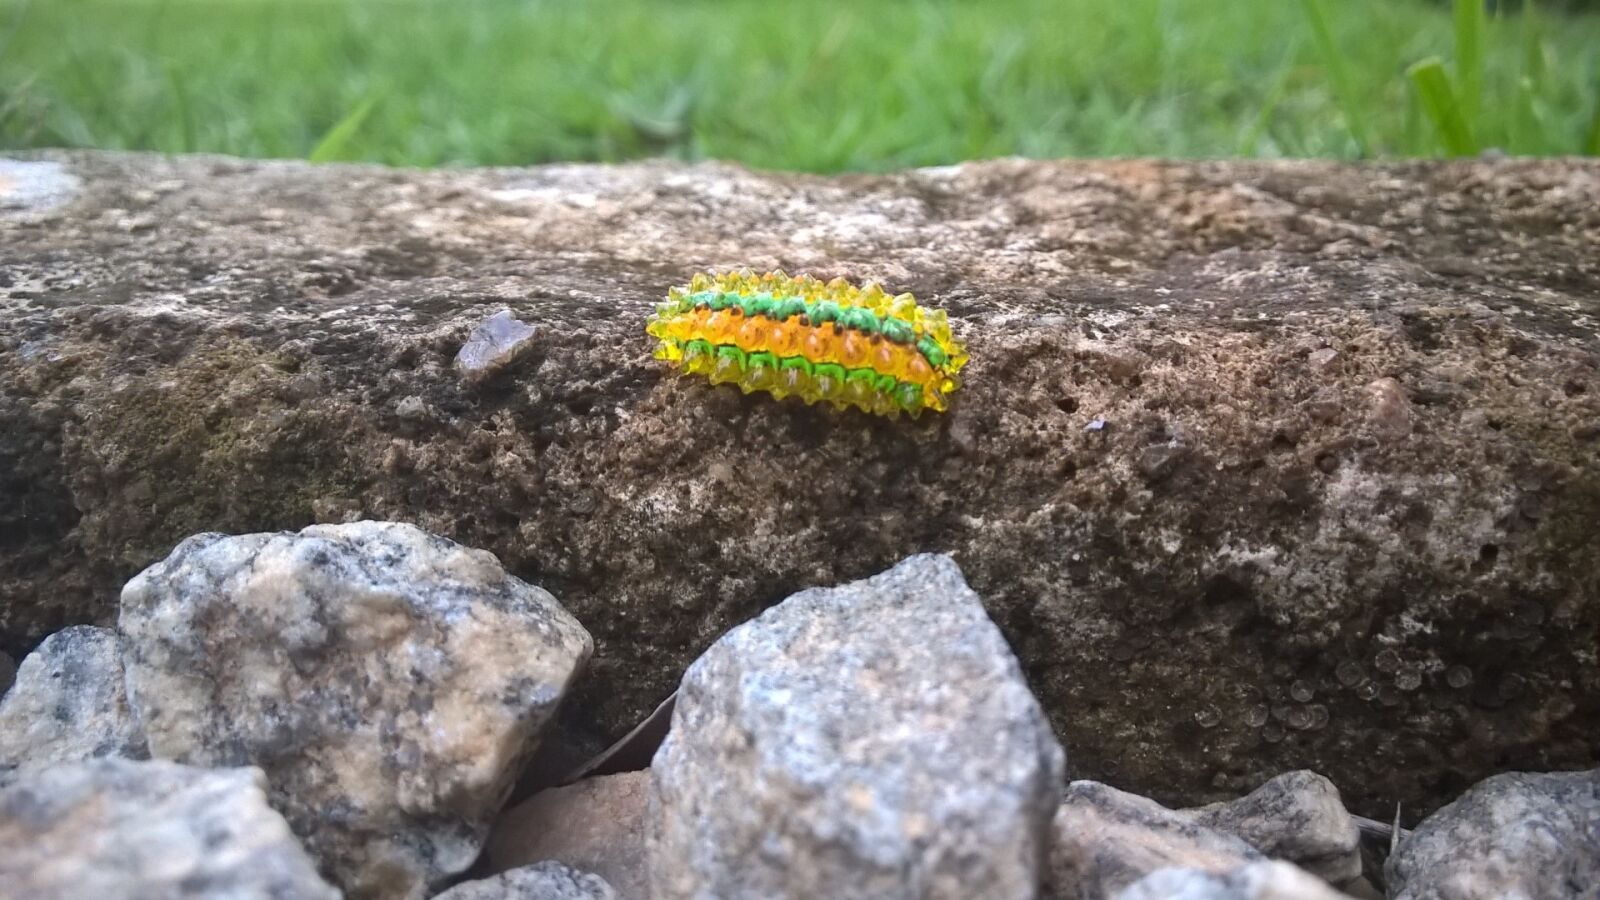 Nokia Lumia 830 sample photo. Caterpillar, jewel, insect photography